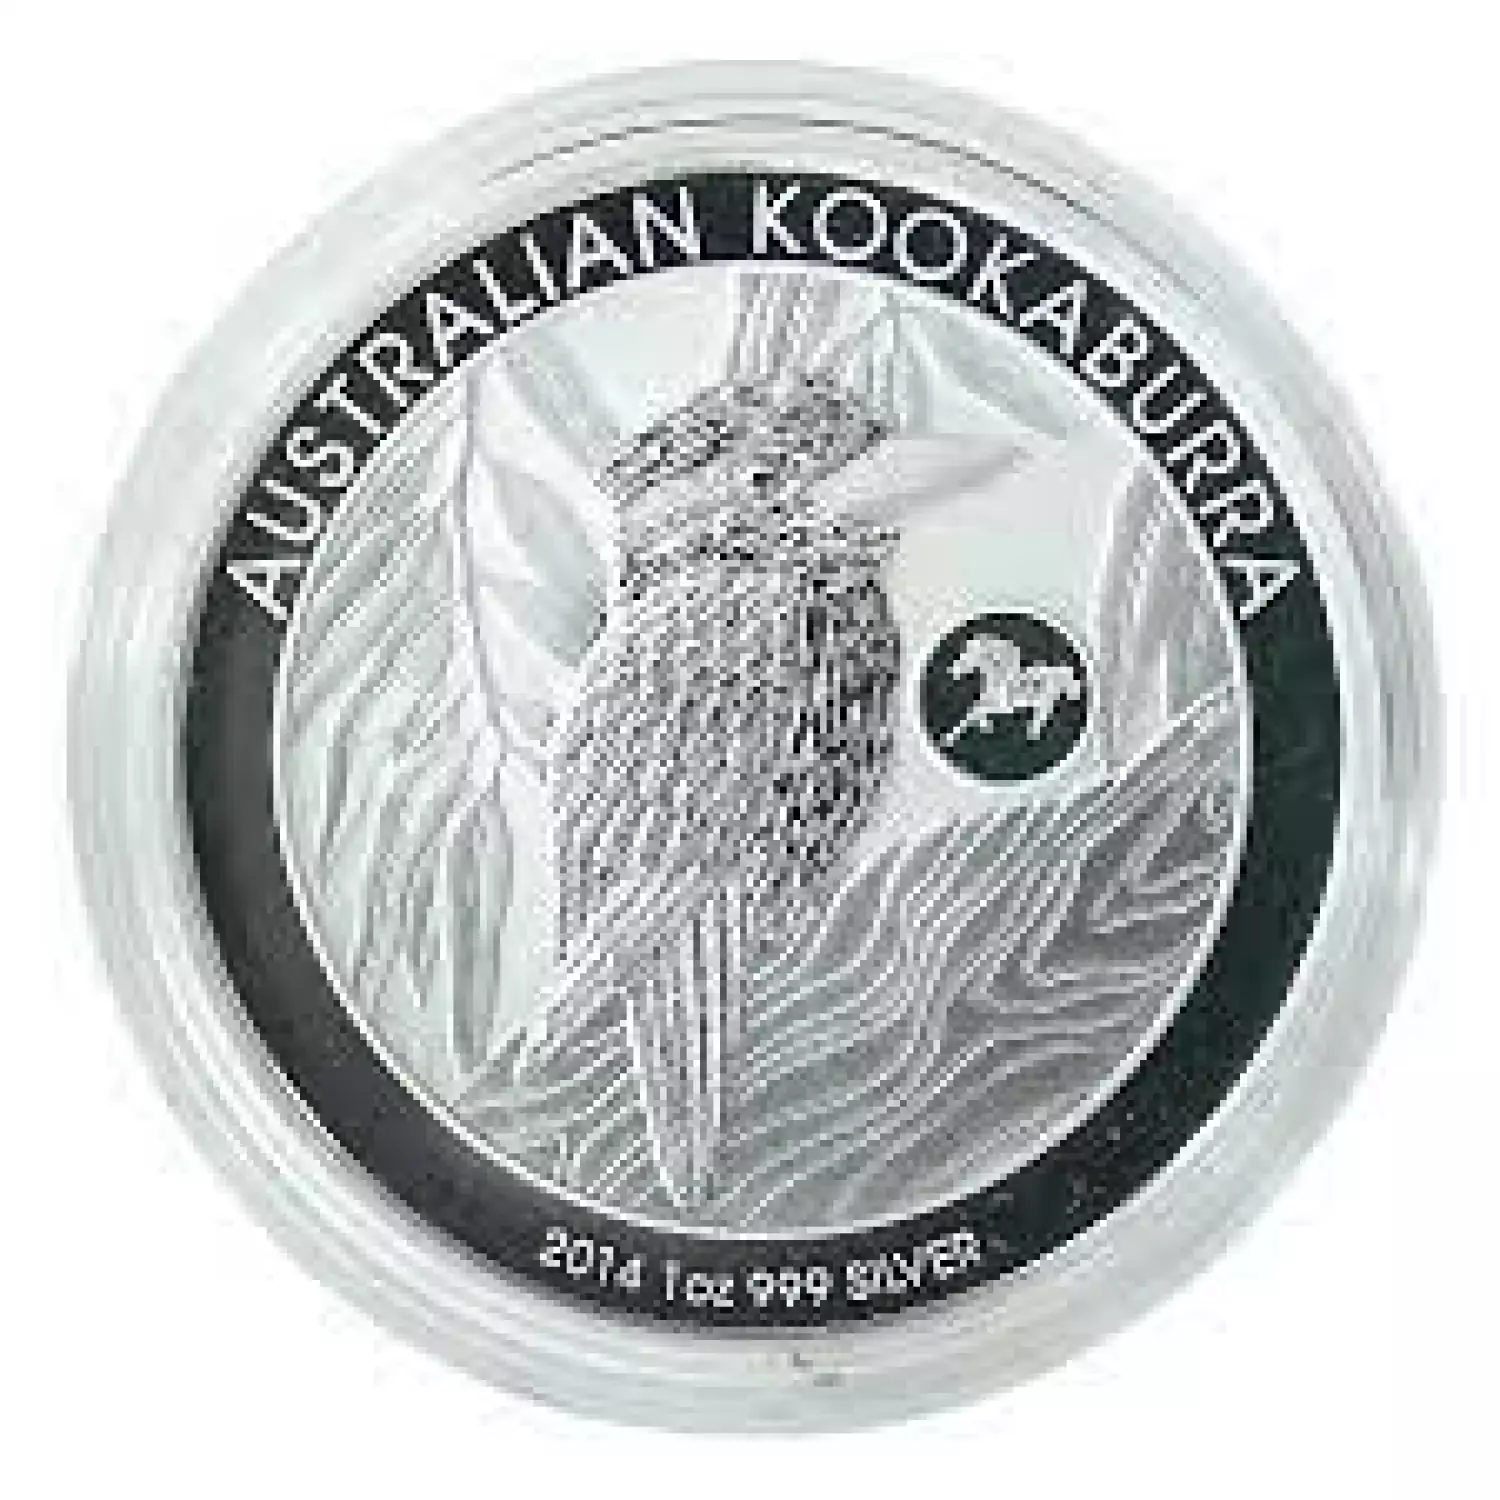 2014 1oz Australian Perth Mint Silver Kookaburra - F15 Privy Mark (2)